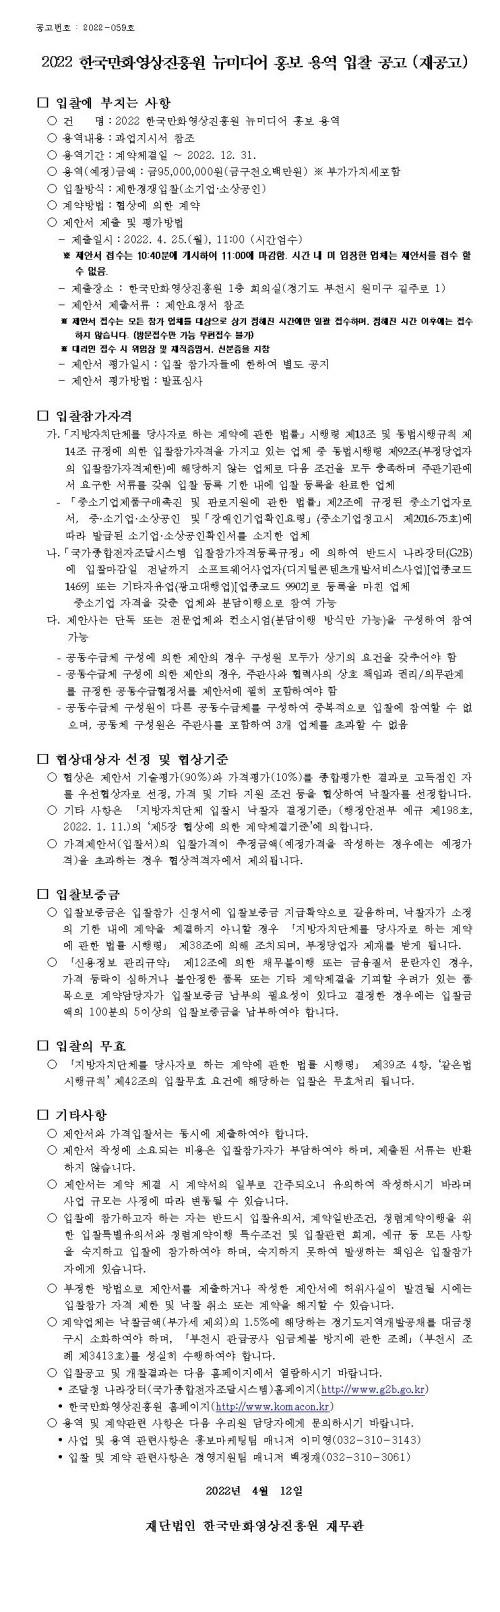 2022 한국만화영상진흥원 뉴미디어 홍보 용역 입찰 공고(재공고)